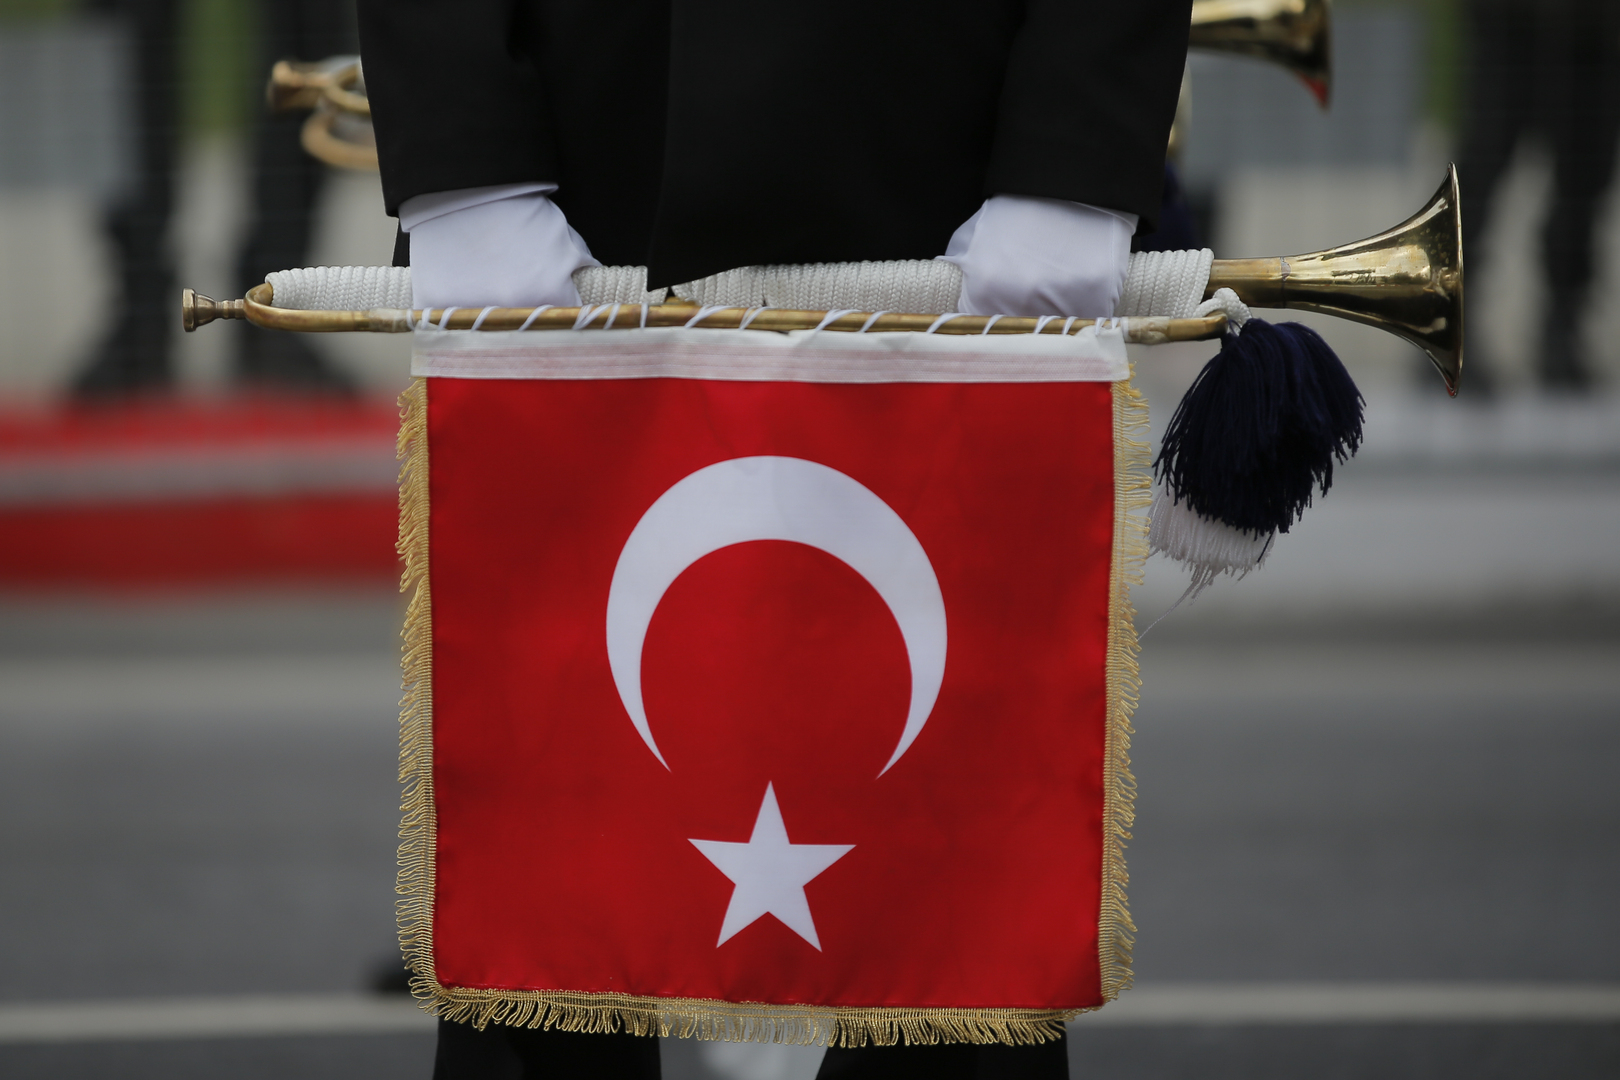 المخابرات التركية تعتقل 7 أشخاص بتهمة بيع معلومات للموساد